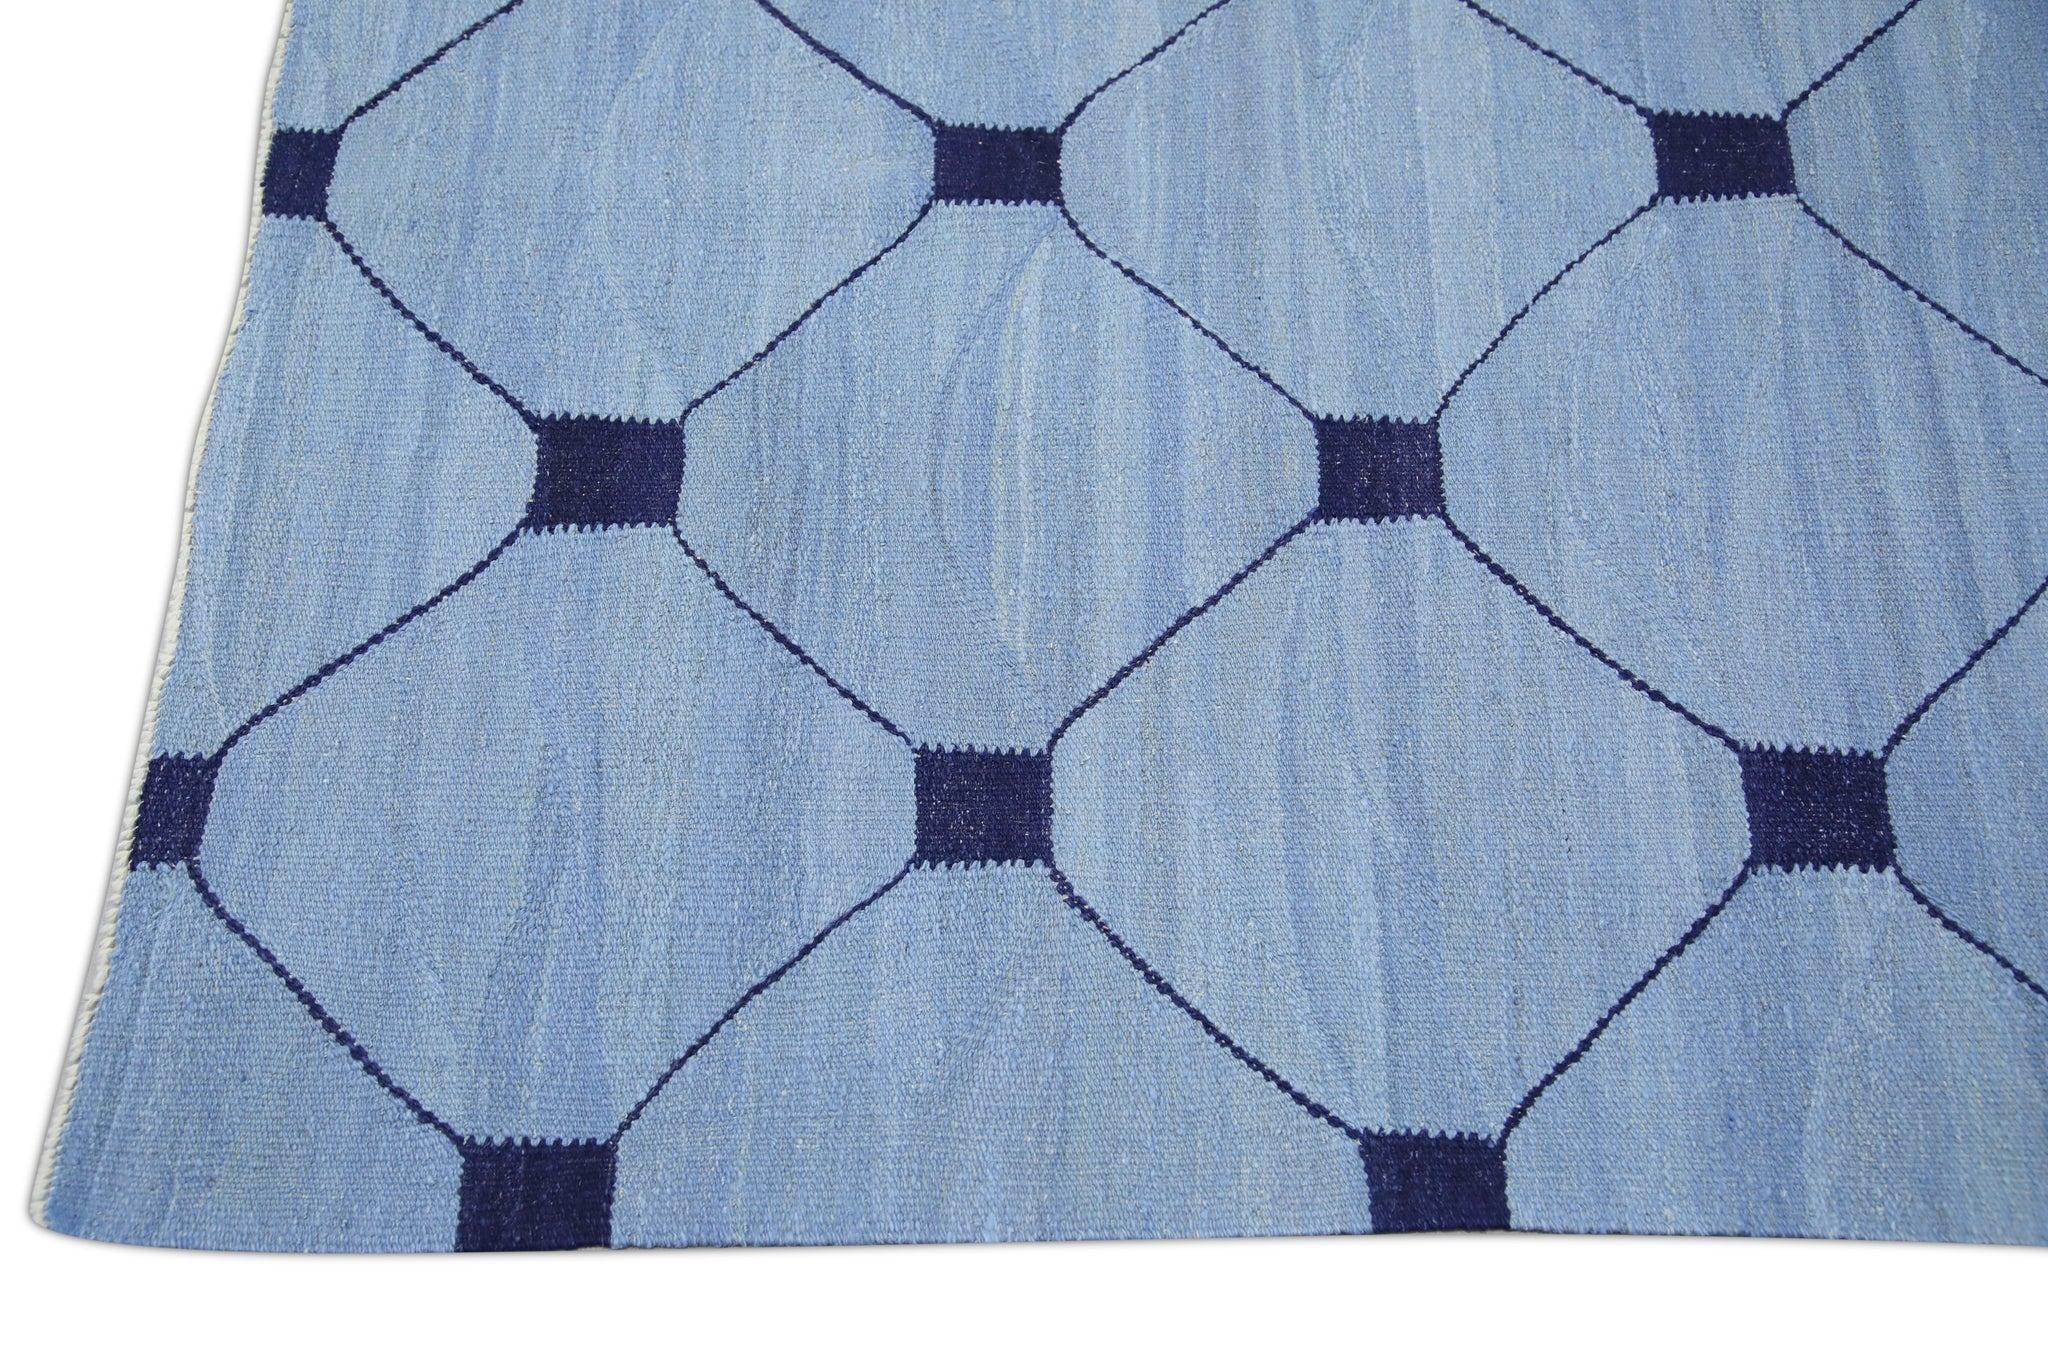 Vegetable Dyed Blue Flatweave Handmade Wool Rug in Navy Geometric Design 9'2